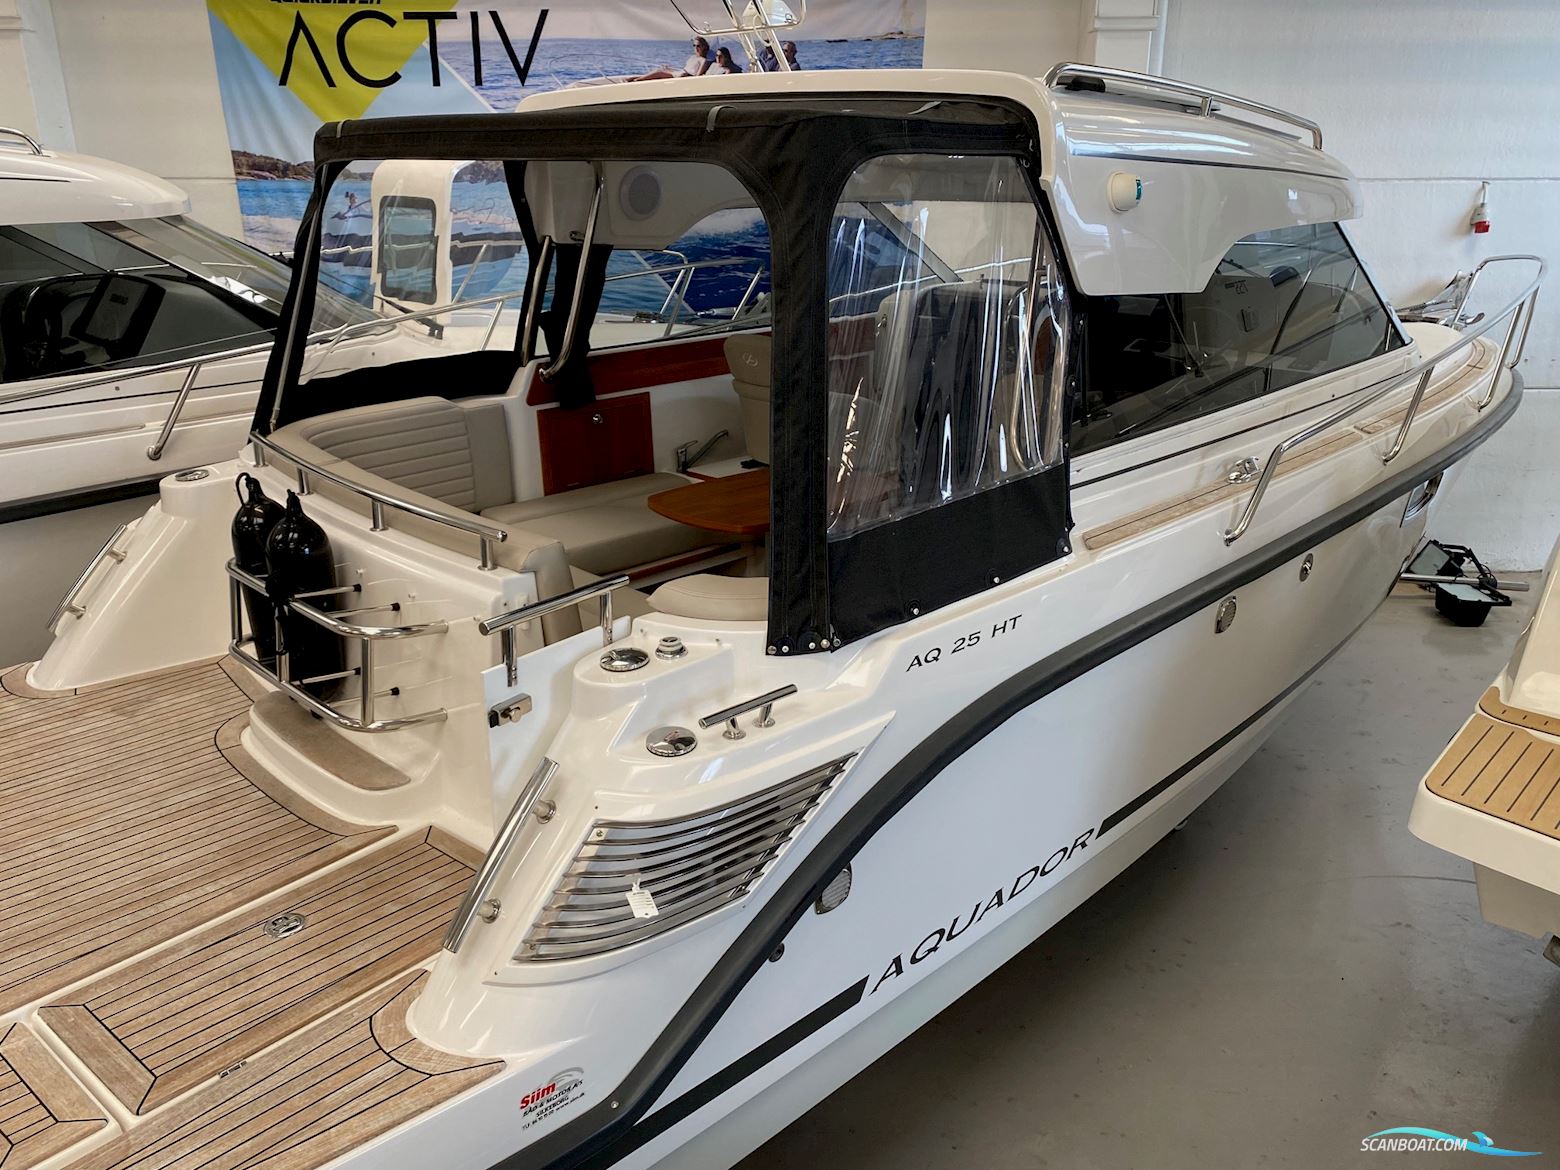 Aquador 25 HT Motorboot 2020, mit Mercuriser 4.5l motor, Dänemark